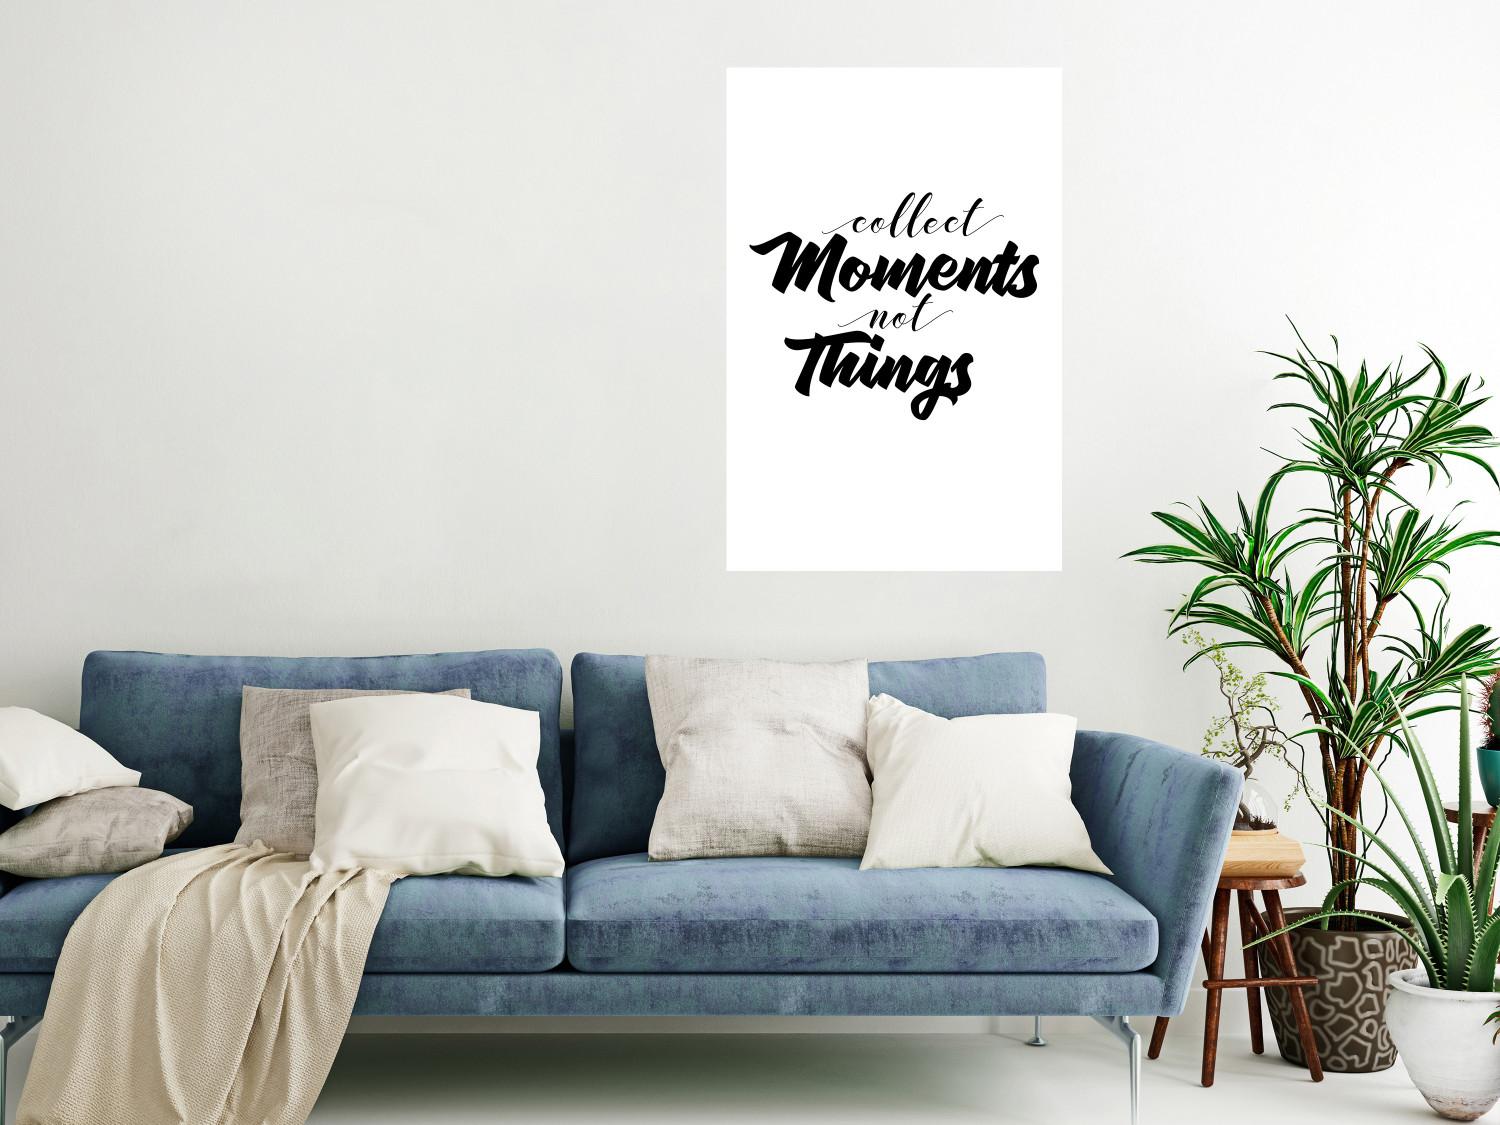 Poster Colecciona momentos, no cosas - letras en inglés sobre fondo blanco